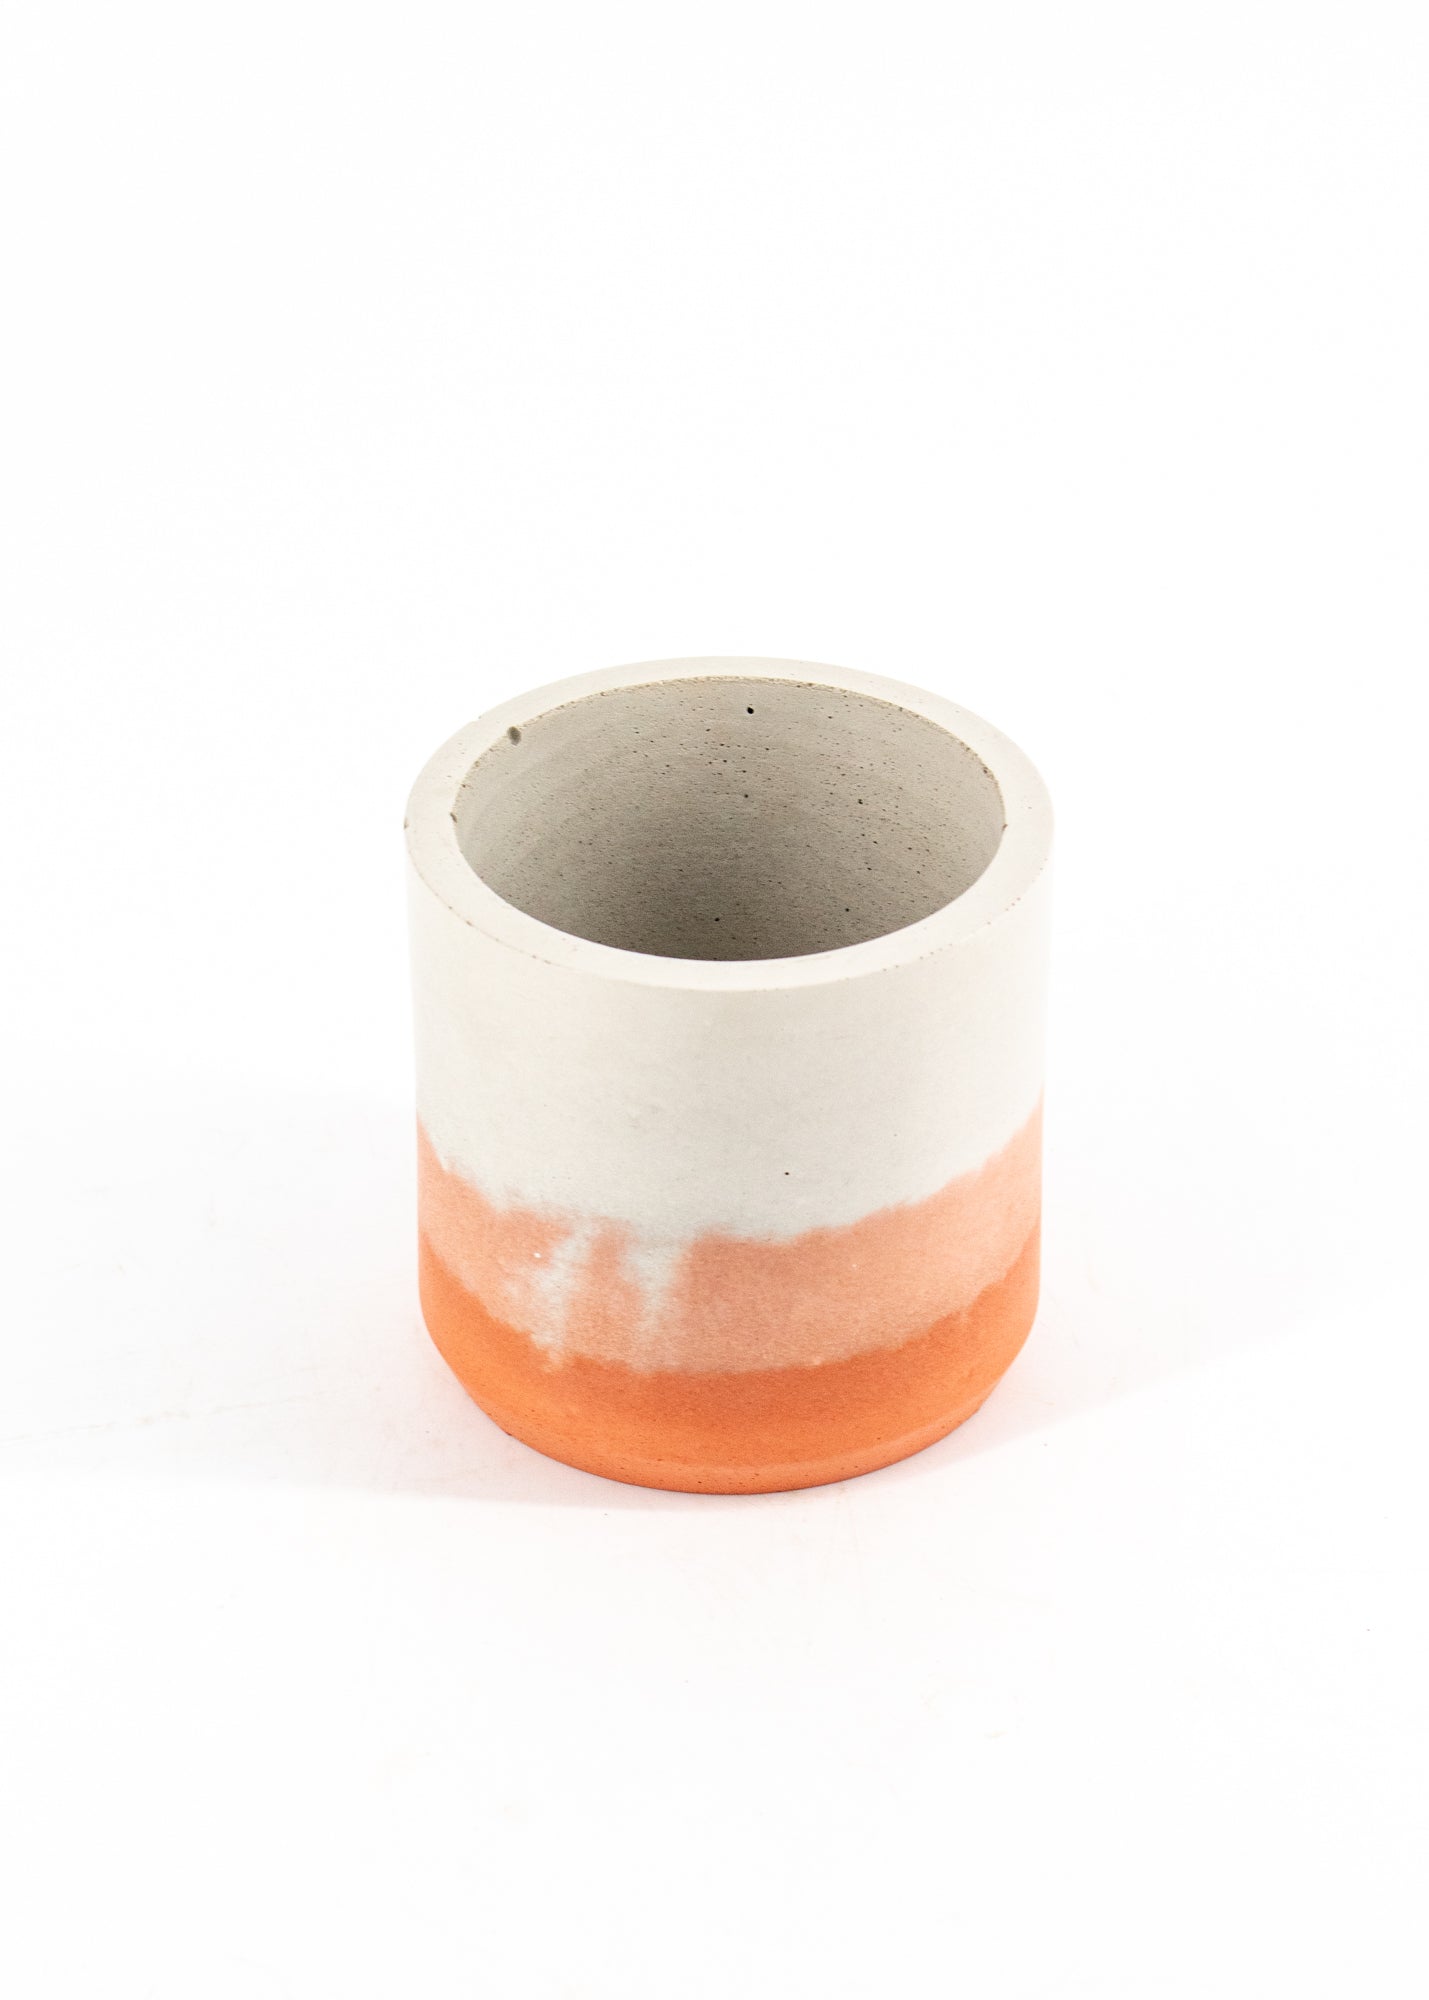 White + Pink + Orange Concrete Pot -  - Cord + Iron - Wild Lark